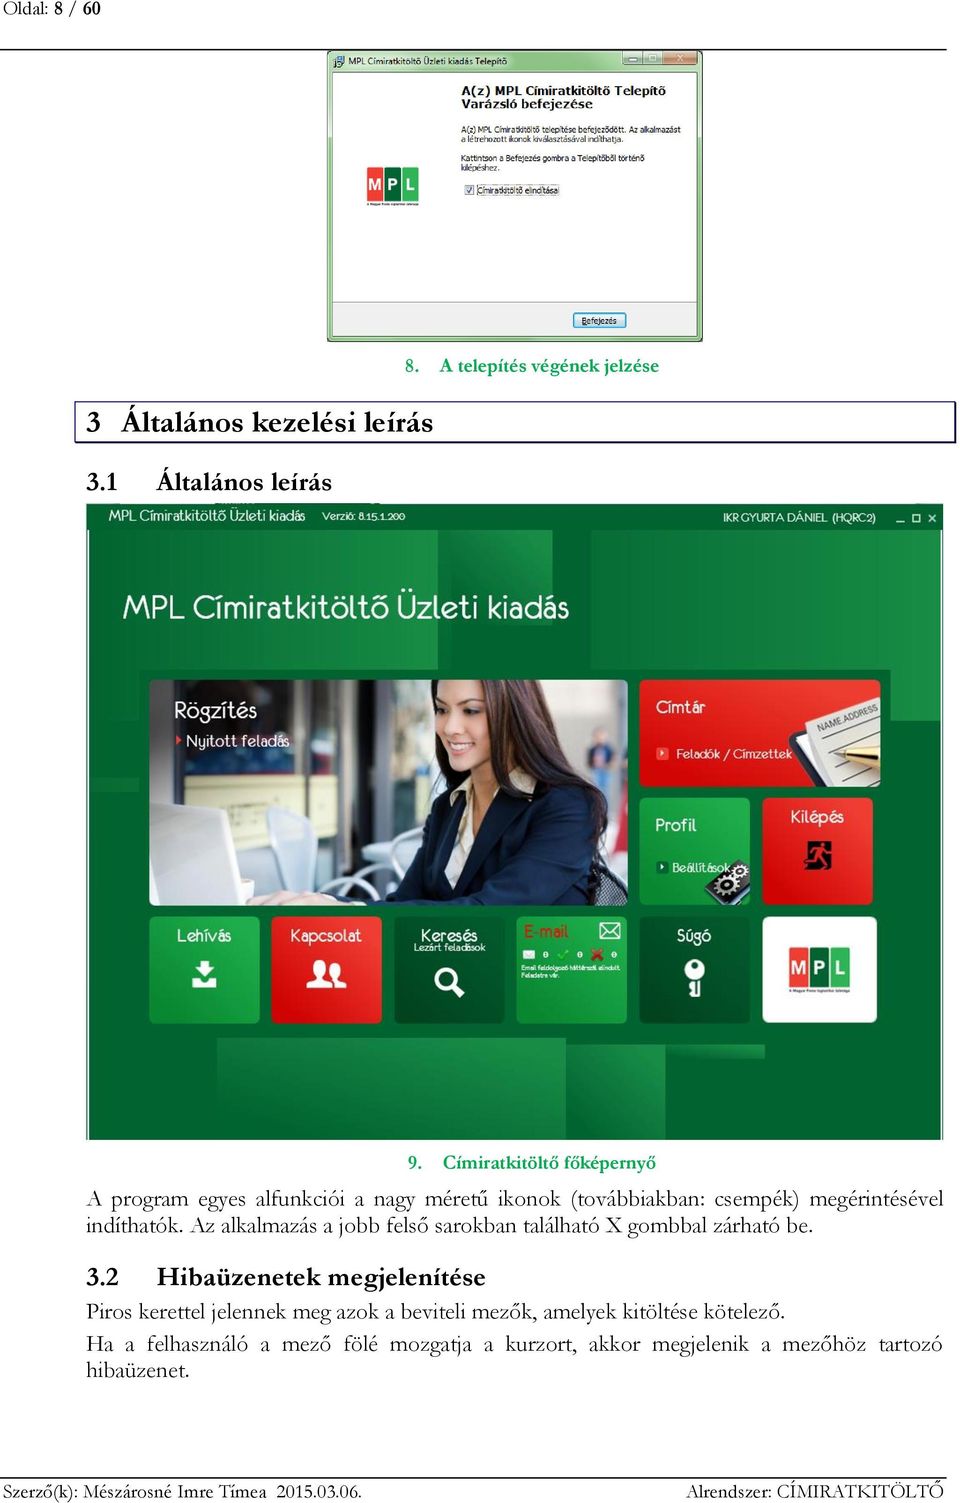 MPL Címiratkitöltő alkalmazás - PDF Ingyenes letöltés